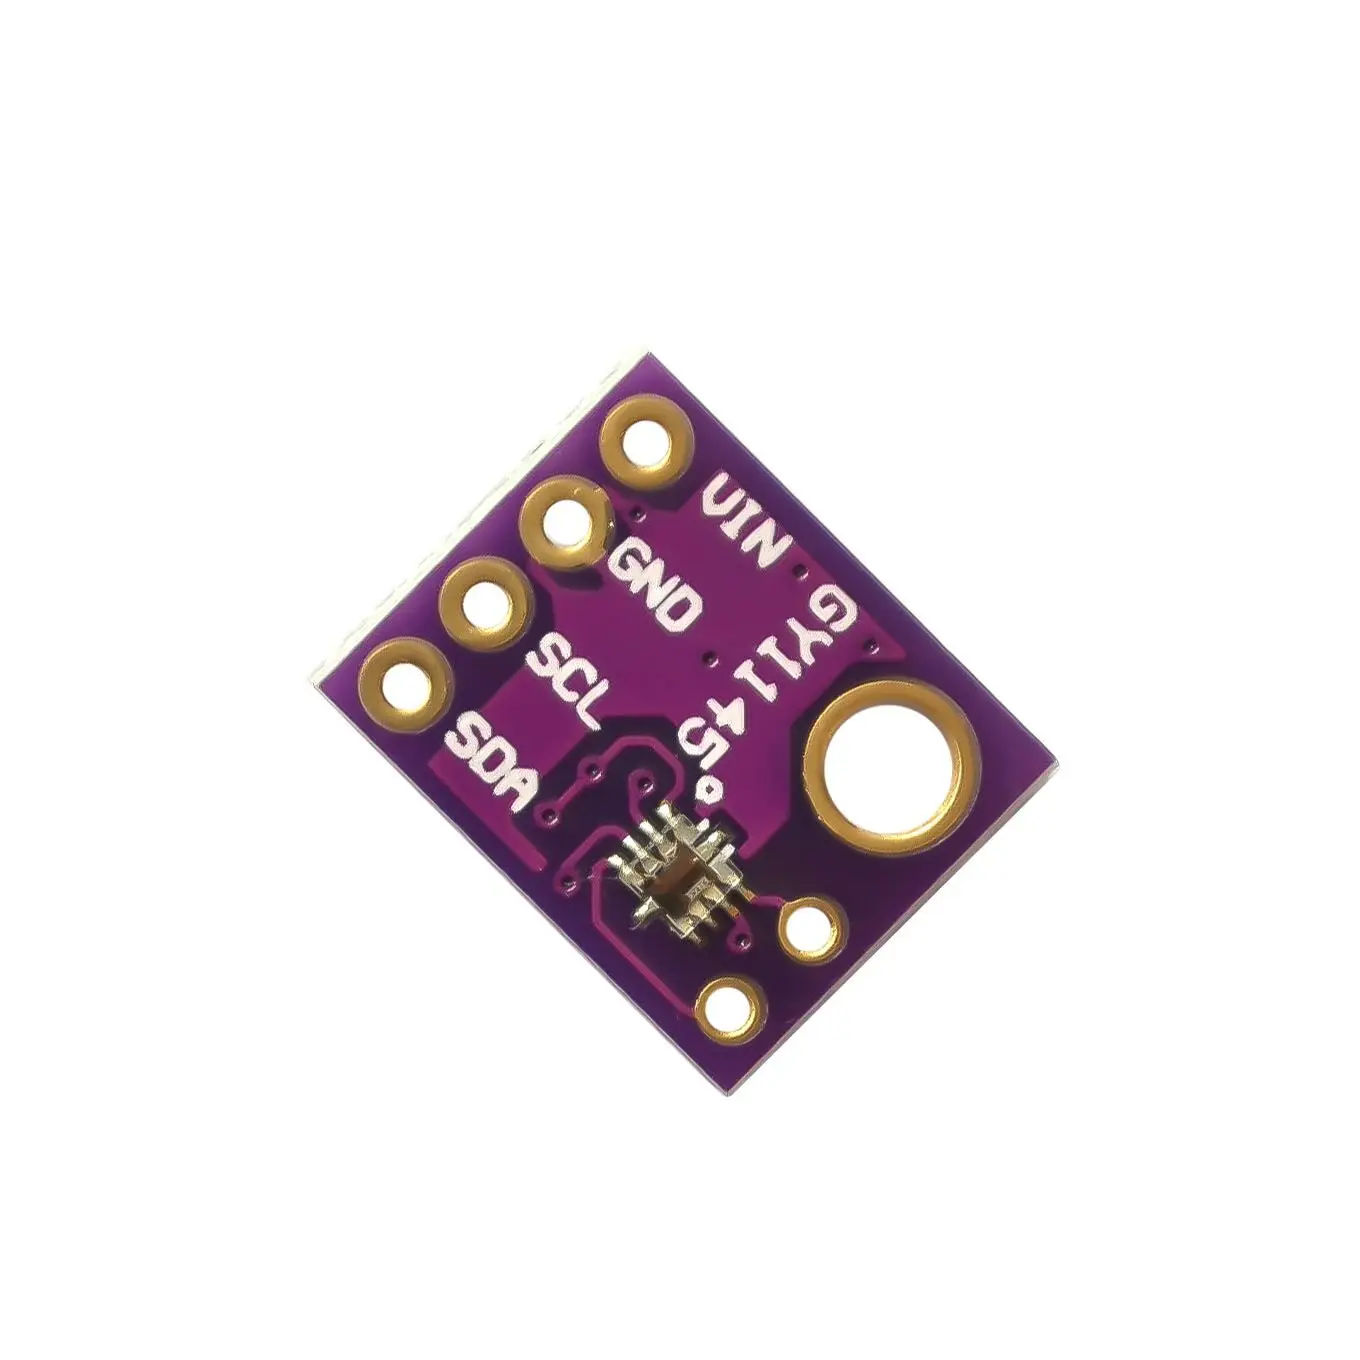 SI1145 УФ ИК Видимый датчик I2C GY1145 светильник коммутационная плата модуль